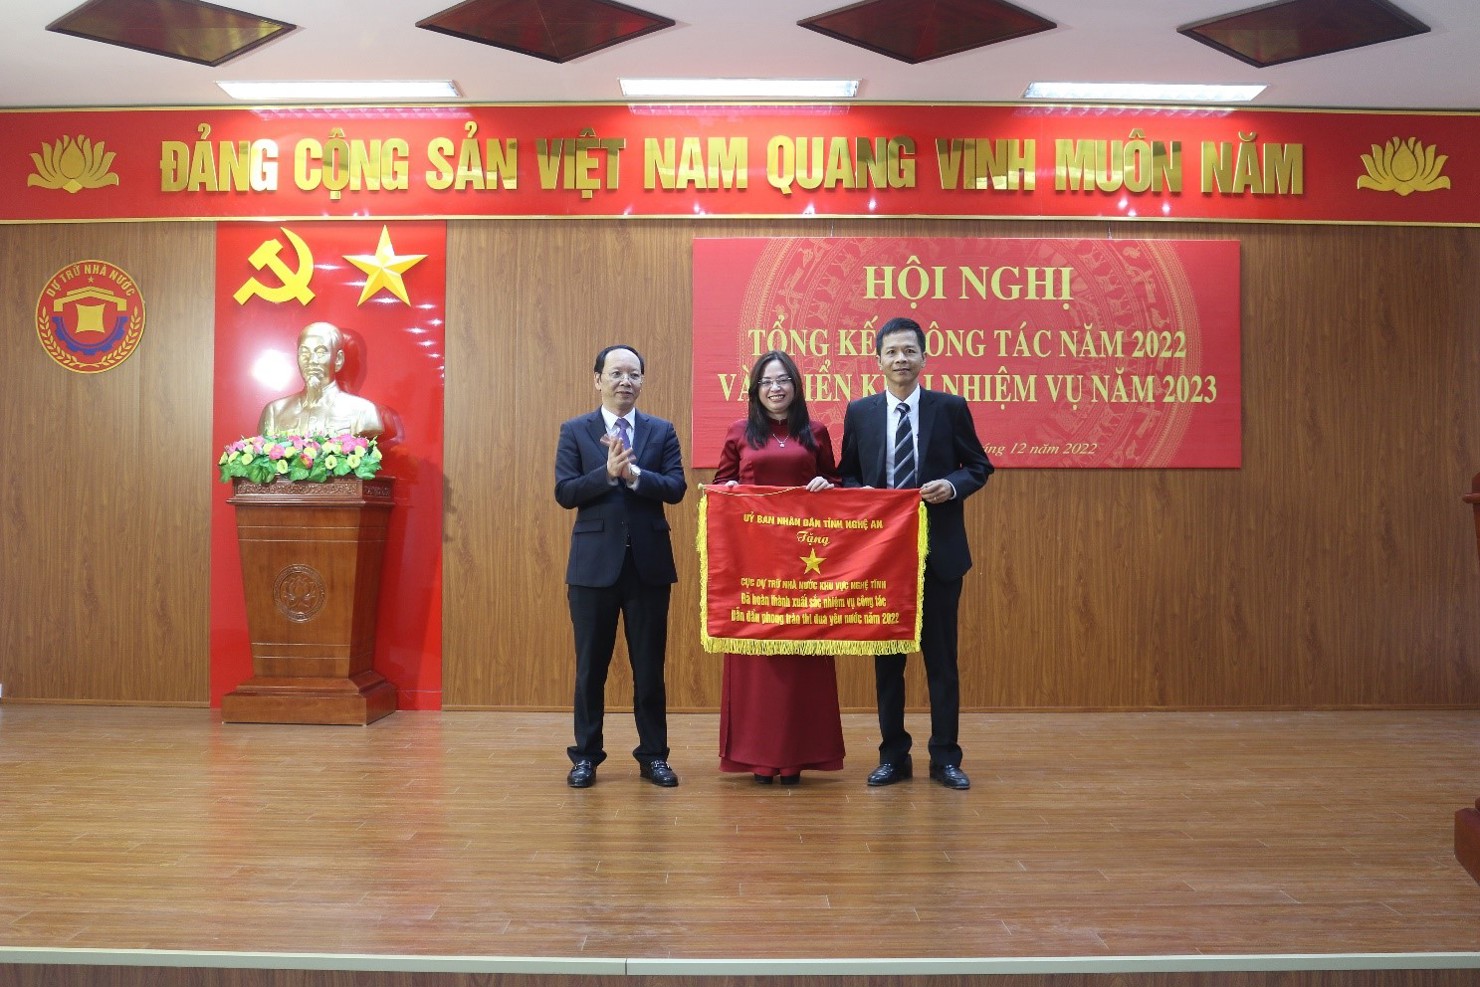 Phó Chủ tịch UBND tỉnh Nghệ An Bùi Thanh An trao tặng Cờ thi đua của UBND tỉnh Nghệ An cho tập thể Cục DTNN khu vực Nghệ Tĩnh.